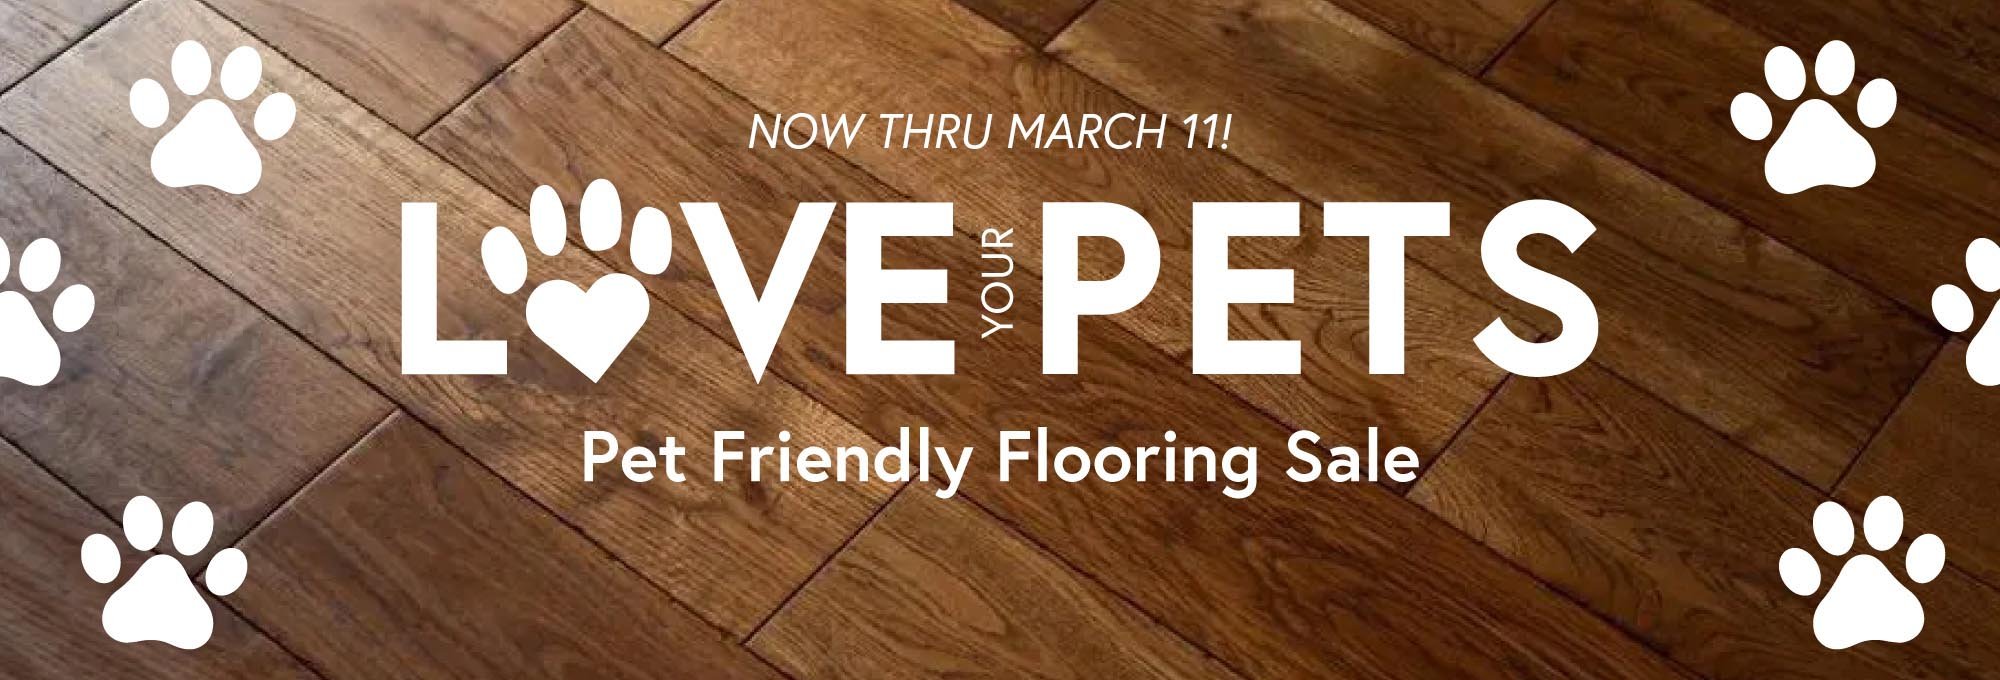 CarpetsPlus ColorTile love your pets - Spring flooring sale